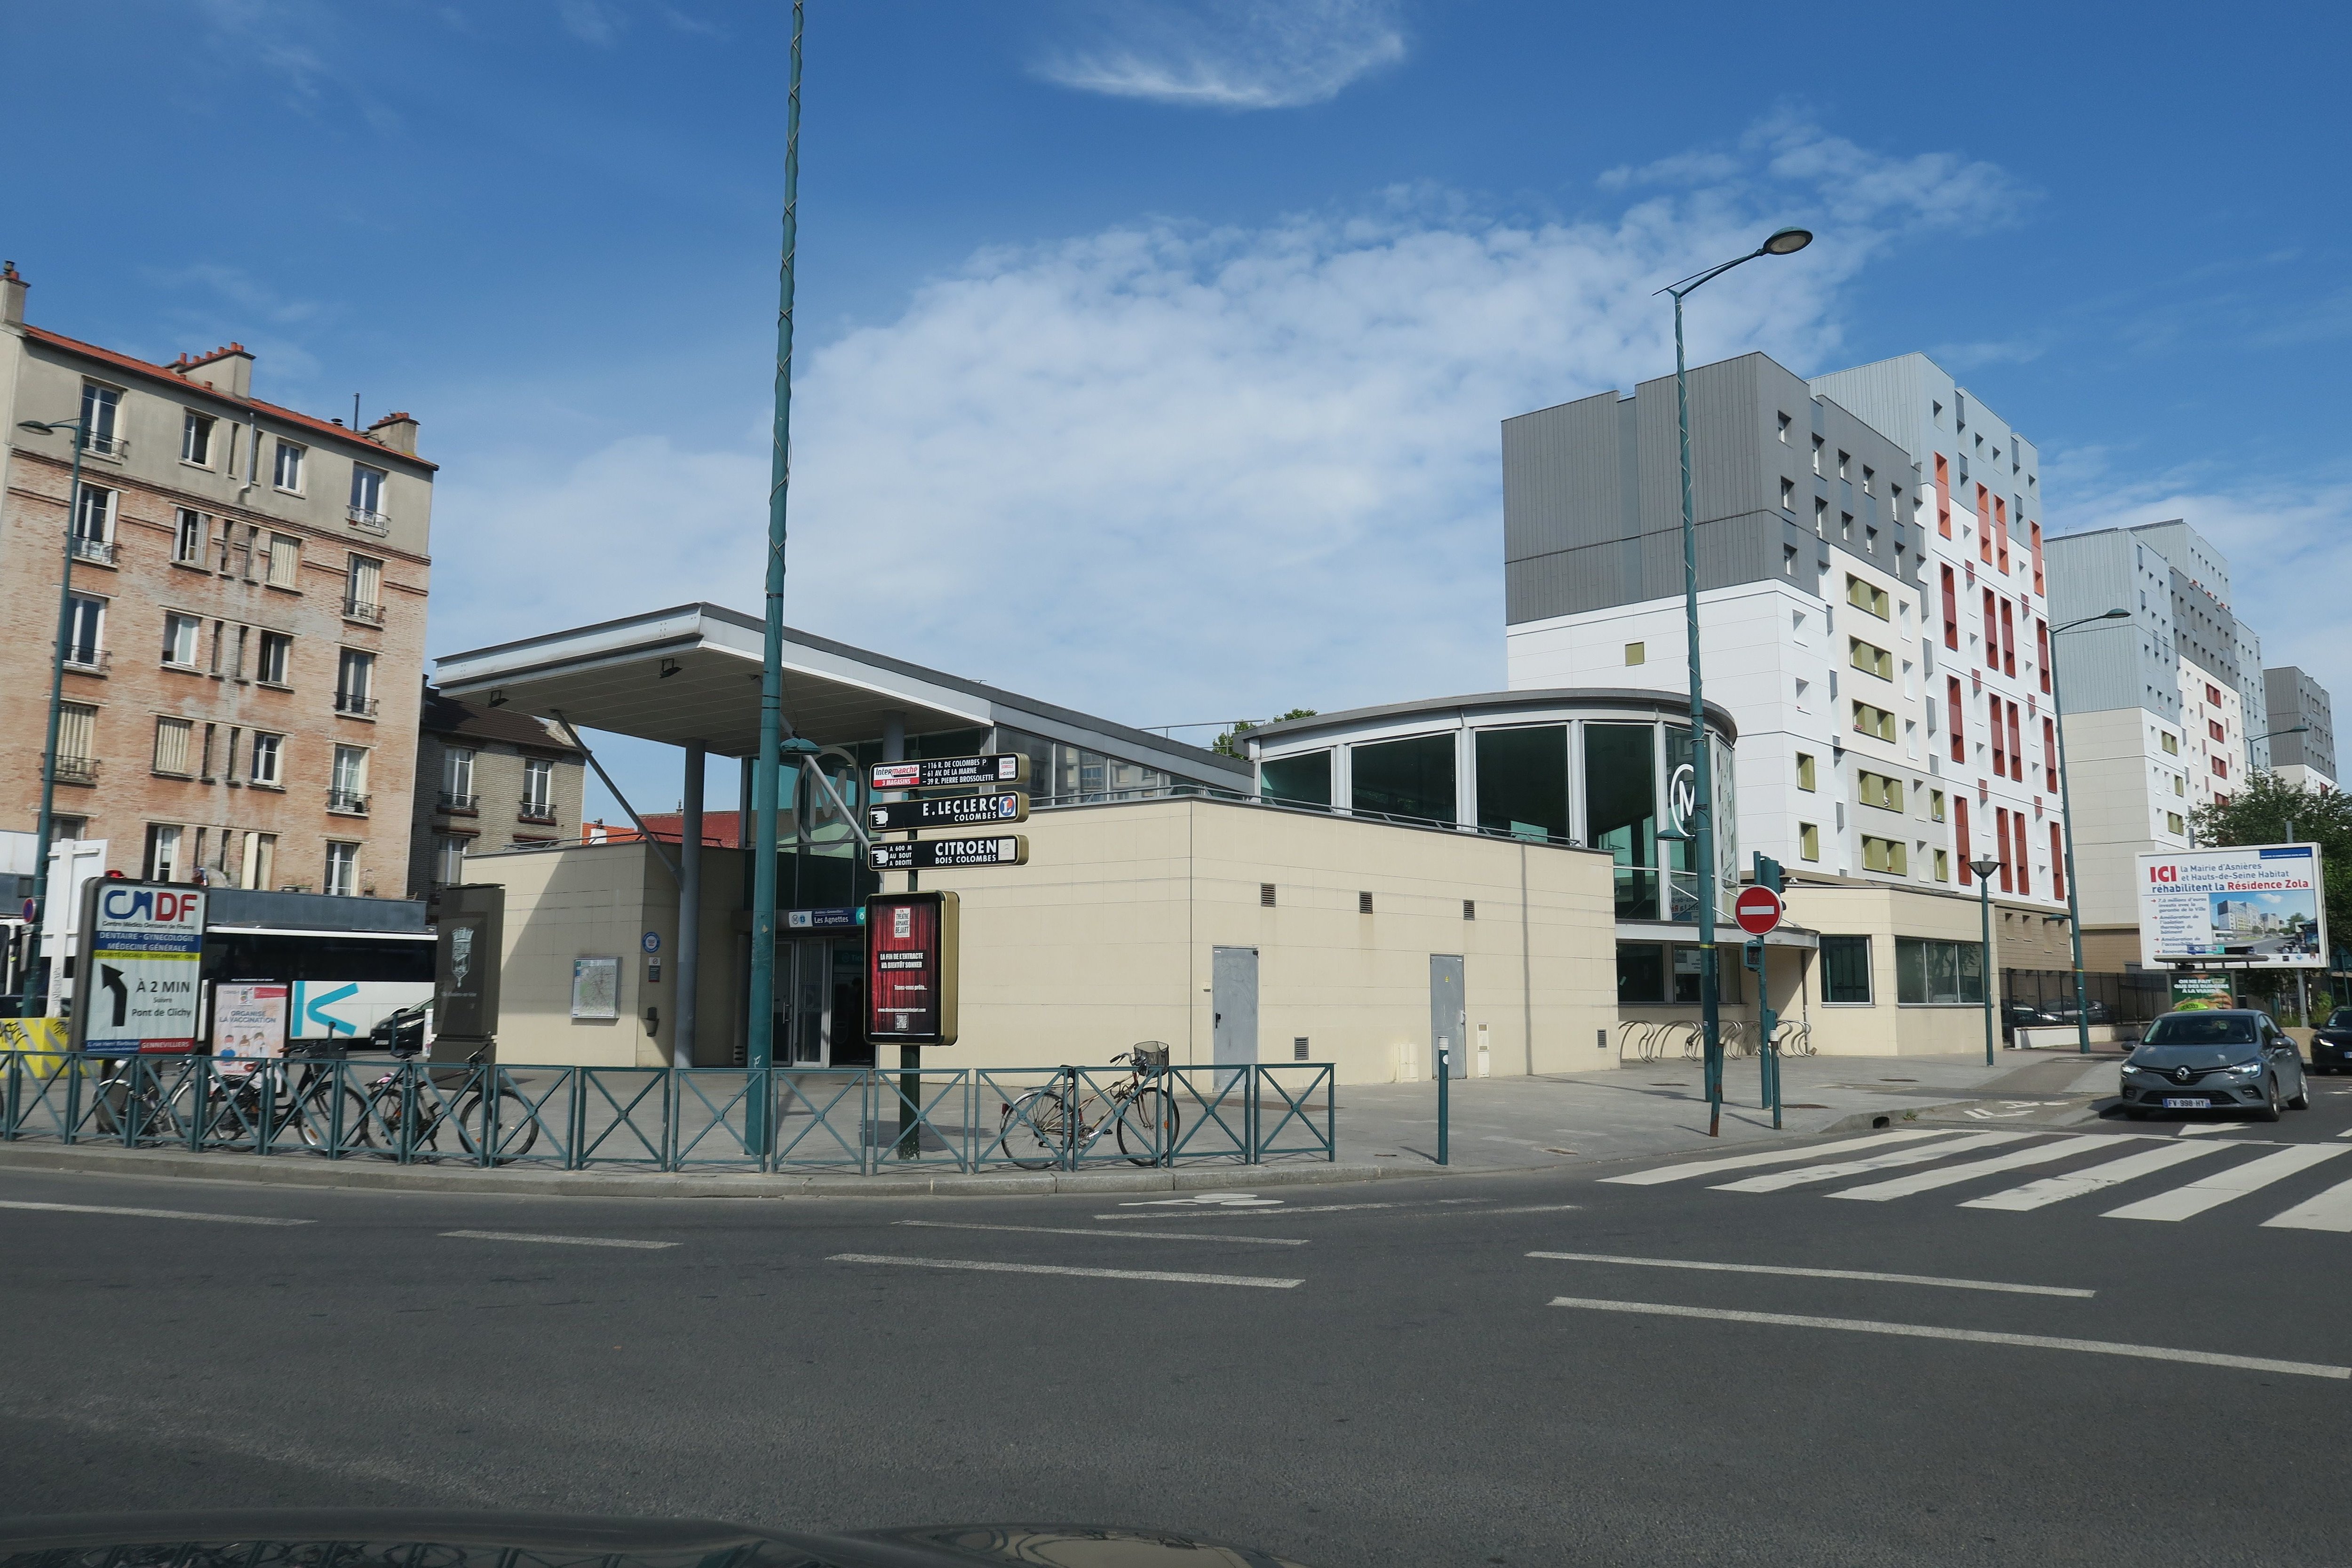 Gennevilliers (Hauts-de-Seine), le 28 mai 2021. La gare des Agnettes, inaugurée en 2008, a fait grimper les prix de l'immobilier dans le secteur et la construction de la future gare du Grand Paris Express, juste en face, va encore doper l'attractivité. LP/Anne-Laure Abraham